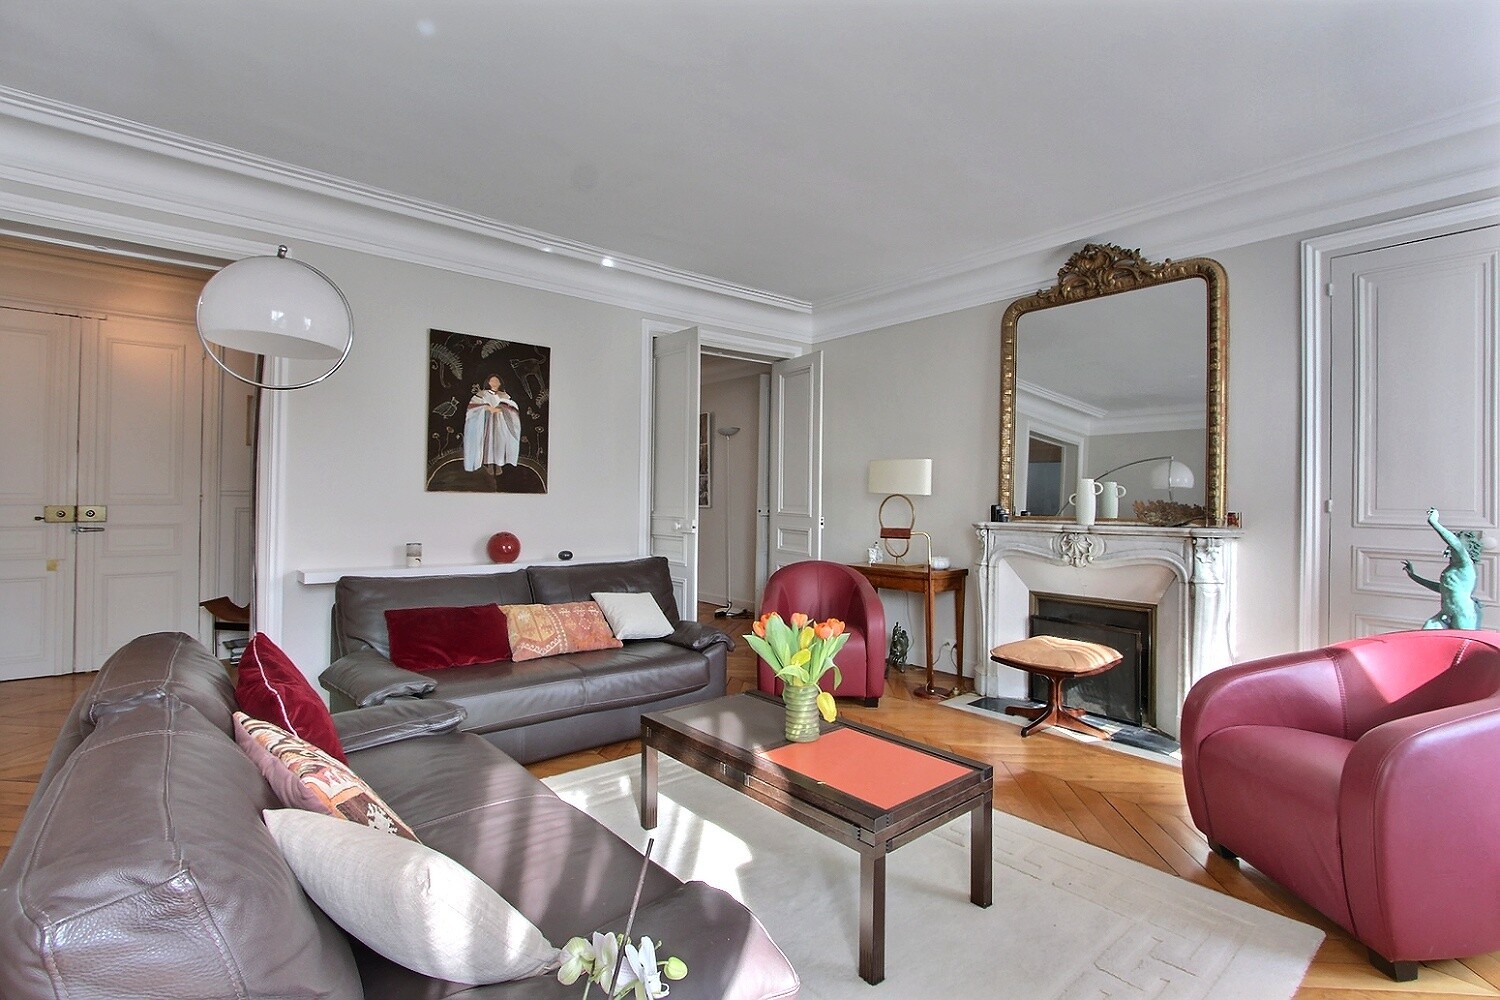 2-bedroom apartment with long balcony in Saint-Germain-des-Prés